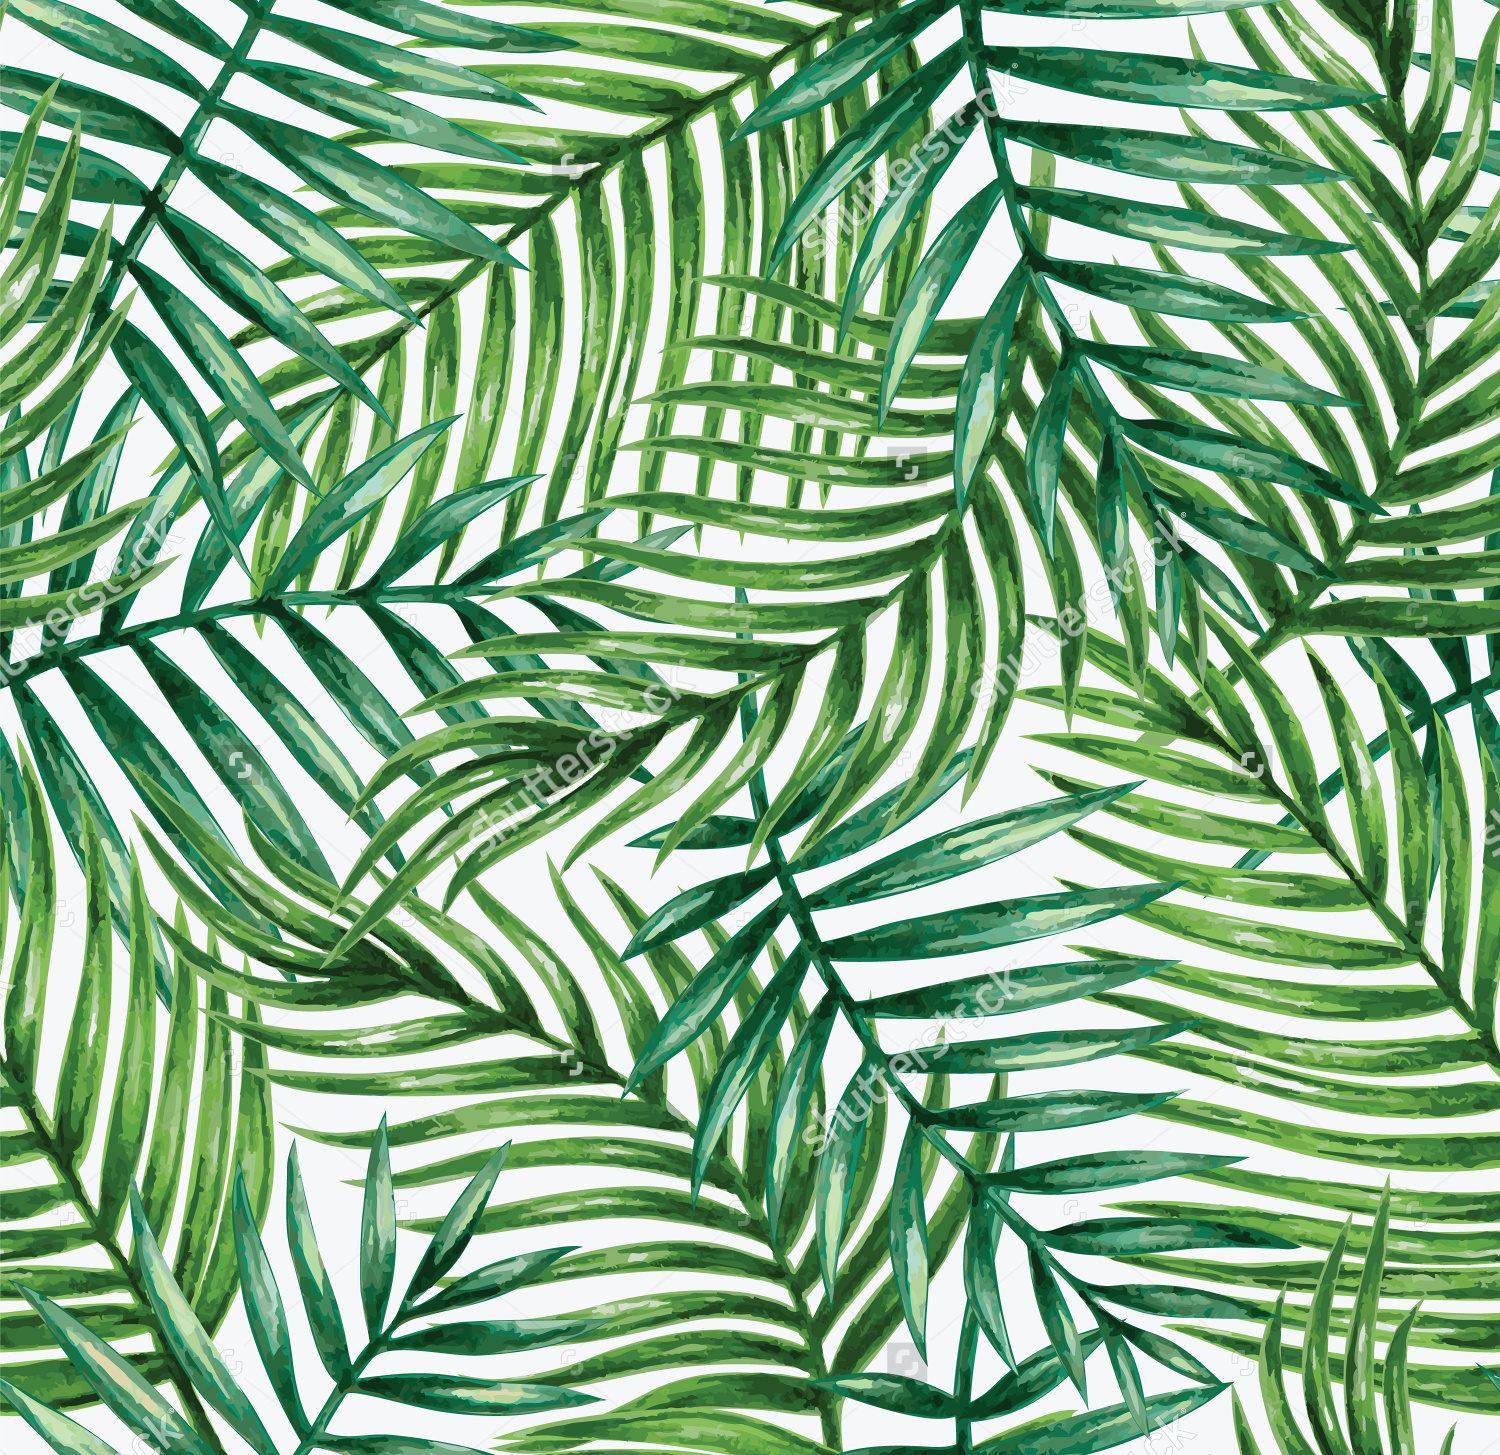 Leaf Design Patterns, Textures, Background, Image. Design